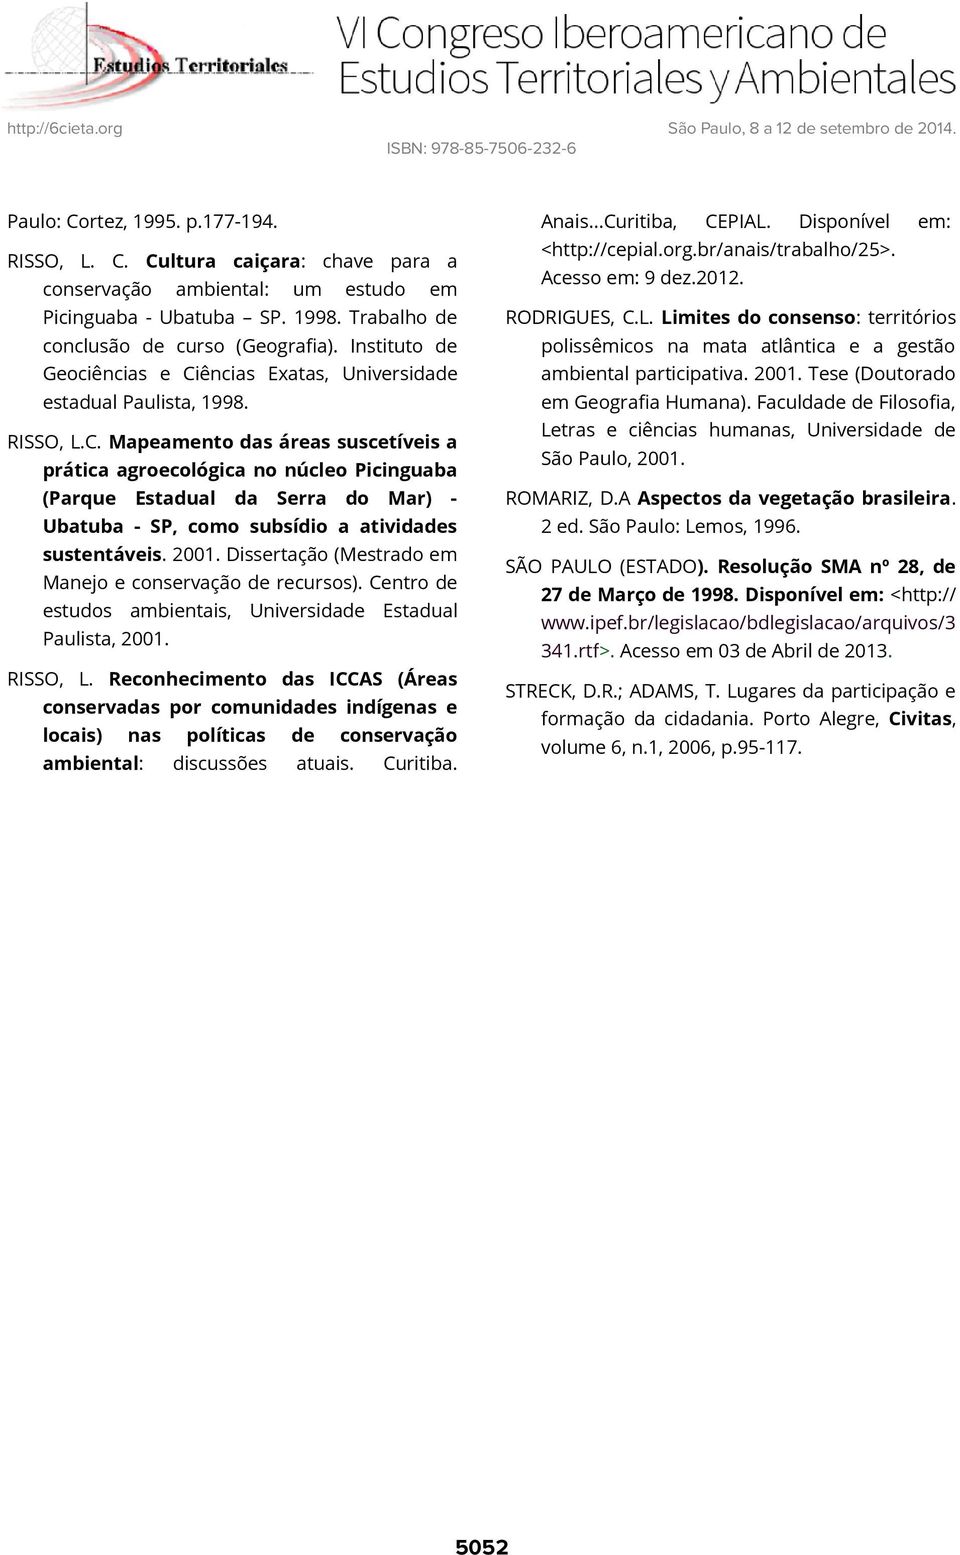 2001. Dissertação (Mestrado em Manejo e conservação de recursos). Centro de estudos ambientais, Universidade Estadual Paulista, 2001. RISSO, L.